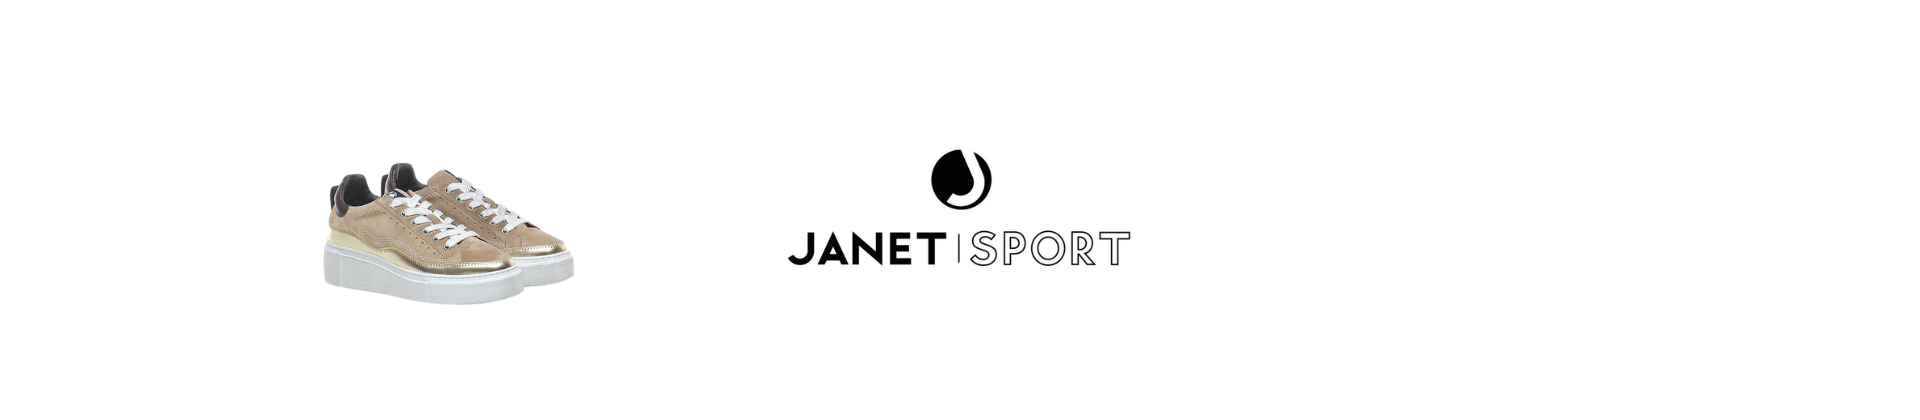 Janet Sport Women's Shoes Online!